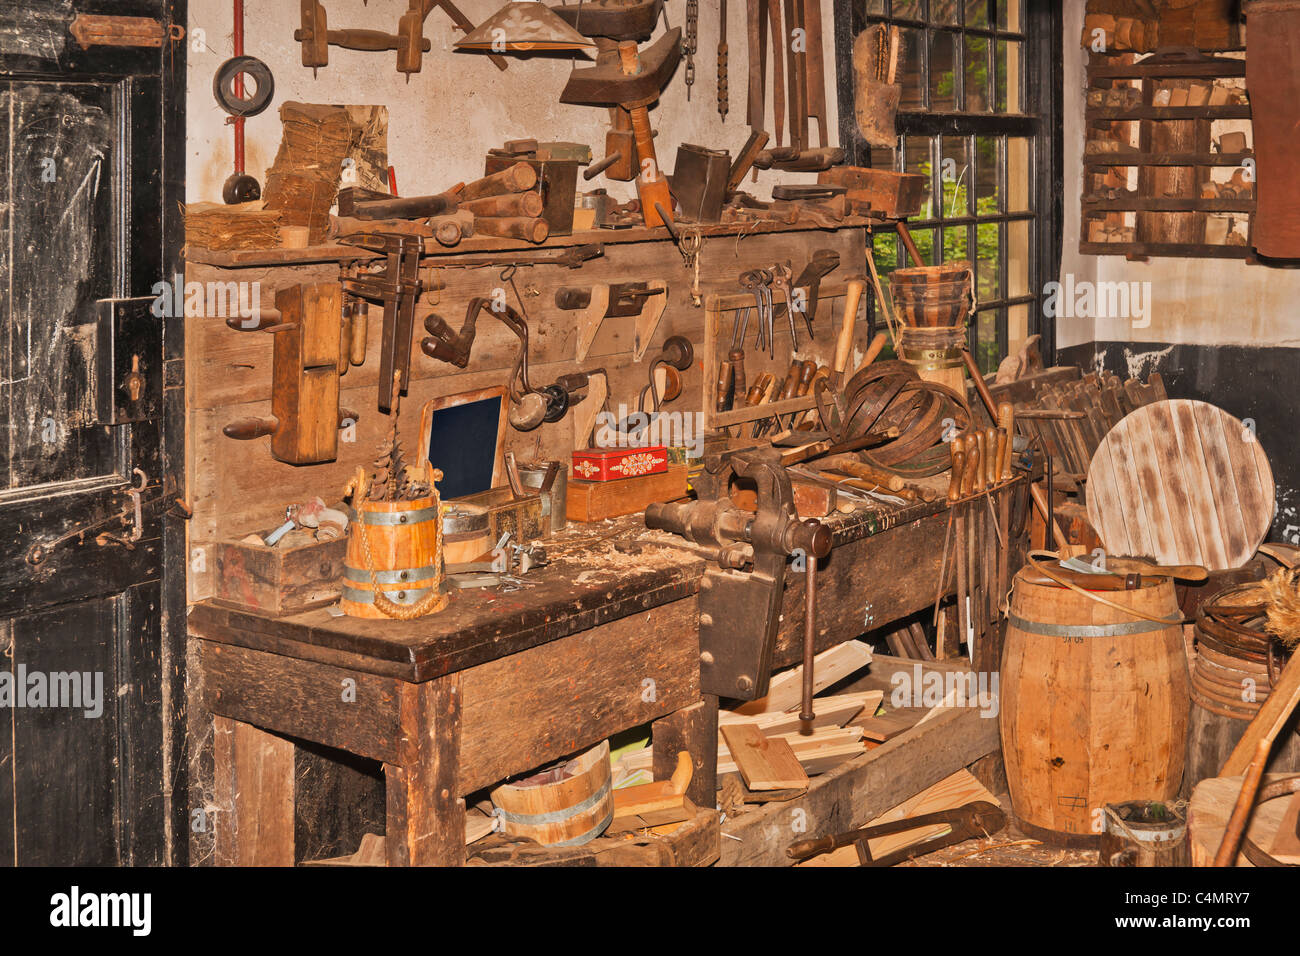 Alte Werkstatt zur Holzbearbeitung und zur Herstellung von Fässern | Old workshop for woodworking and a manufacture of barrels Stock Photo